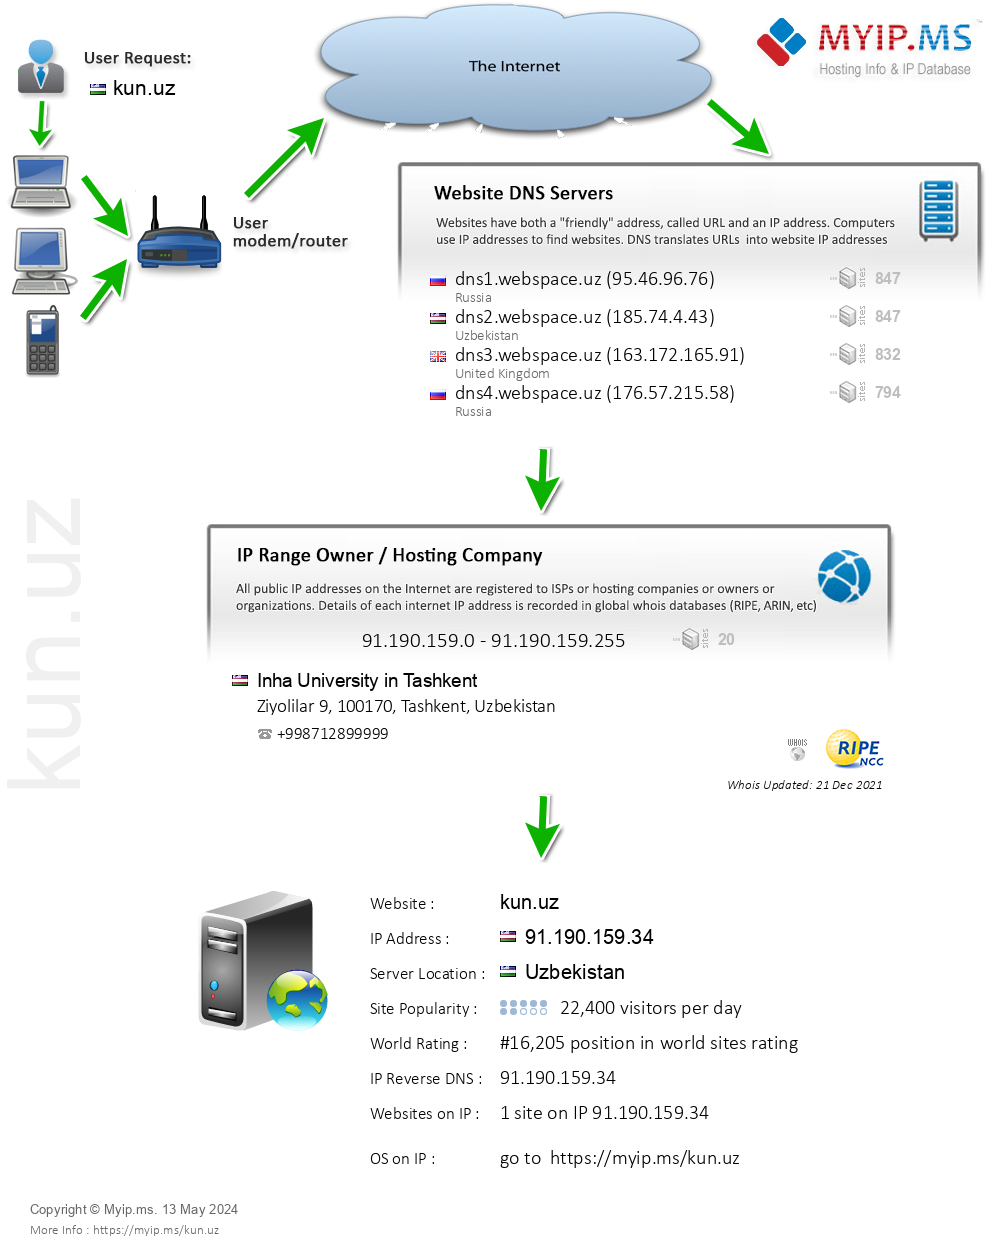 Kun.uz - Website Hosting Visual IP Diagram